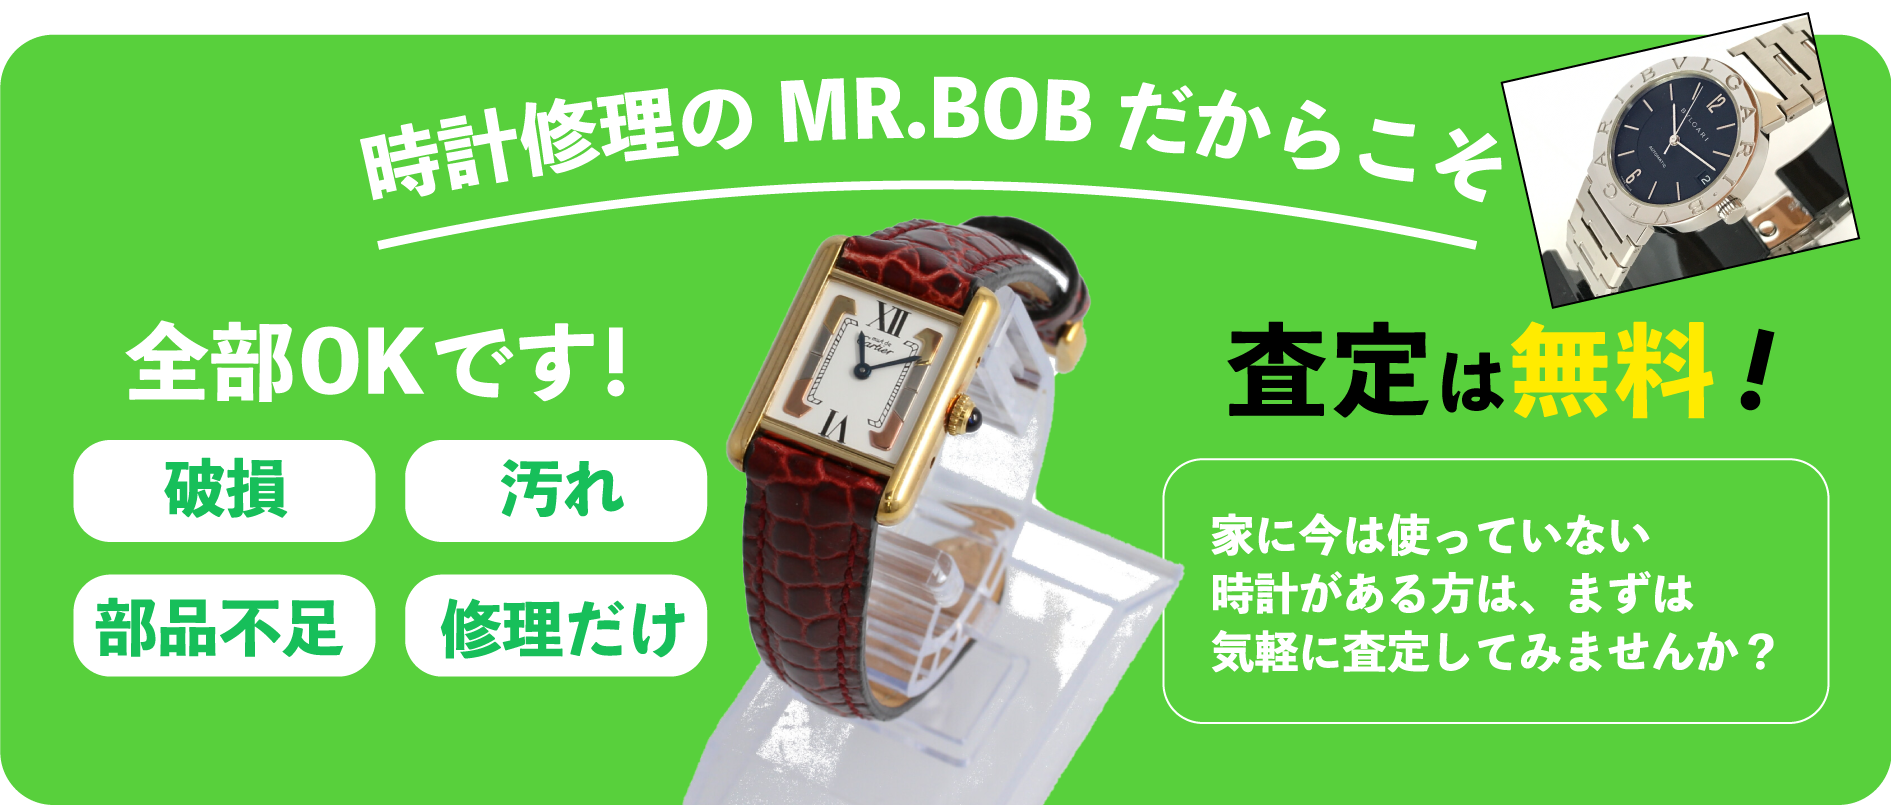 時計修理のmr Bob 名古屋駅 ユニモール店